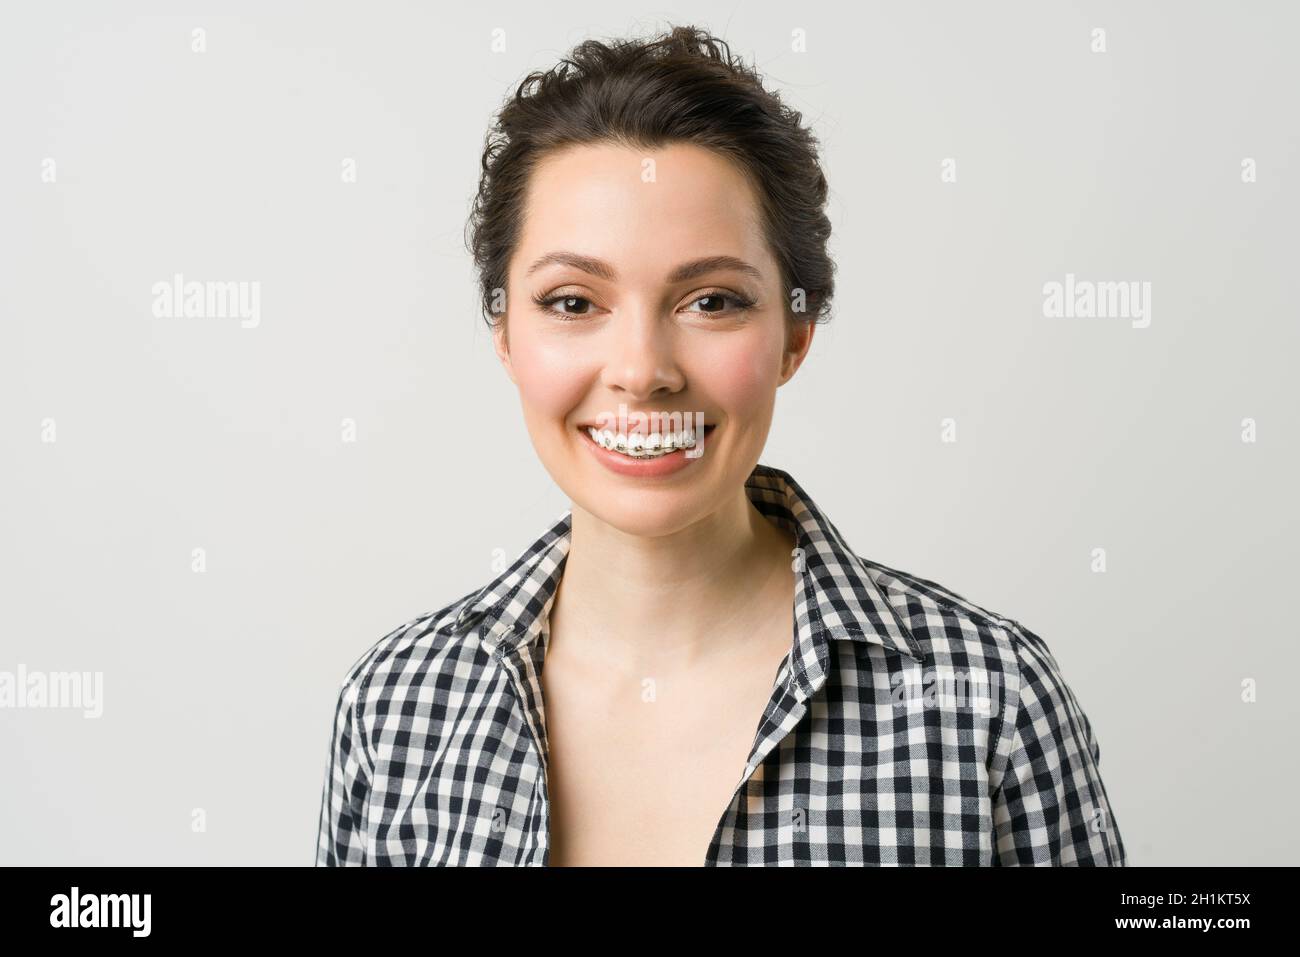 Ritratto di una giovane donna. Una bruna affascinante in una camicia guarda la macchina fotografica e sorride. Foto Stock